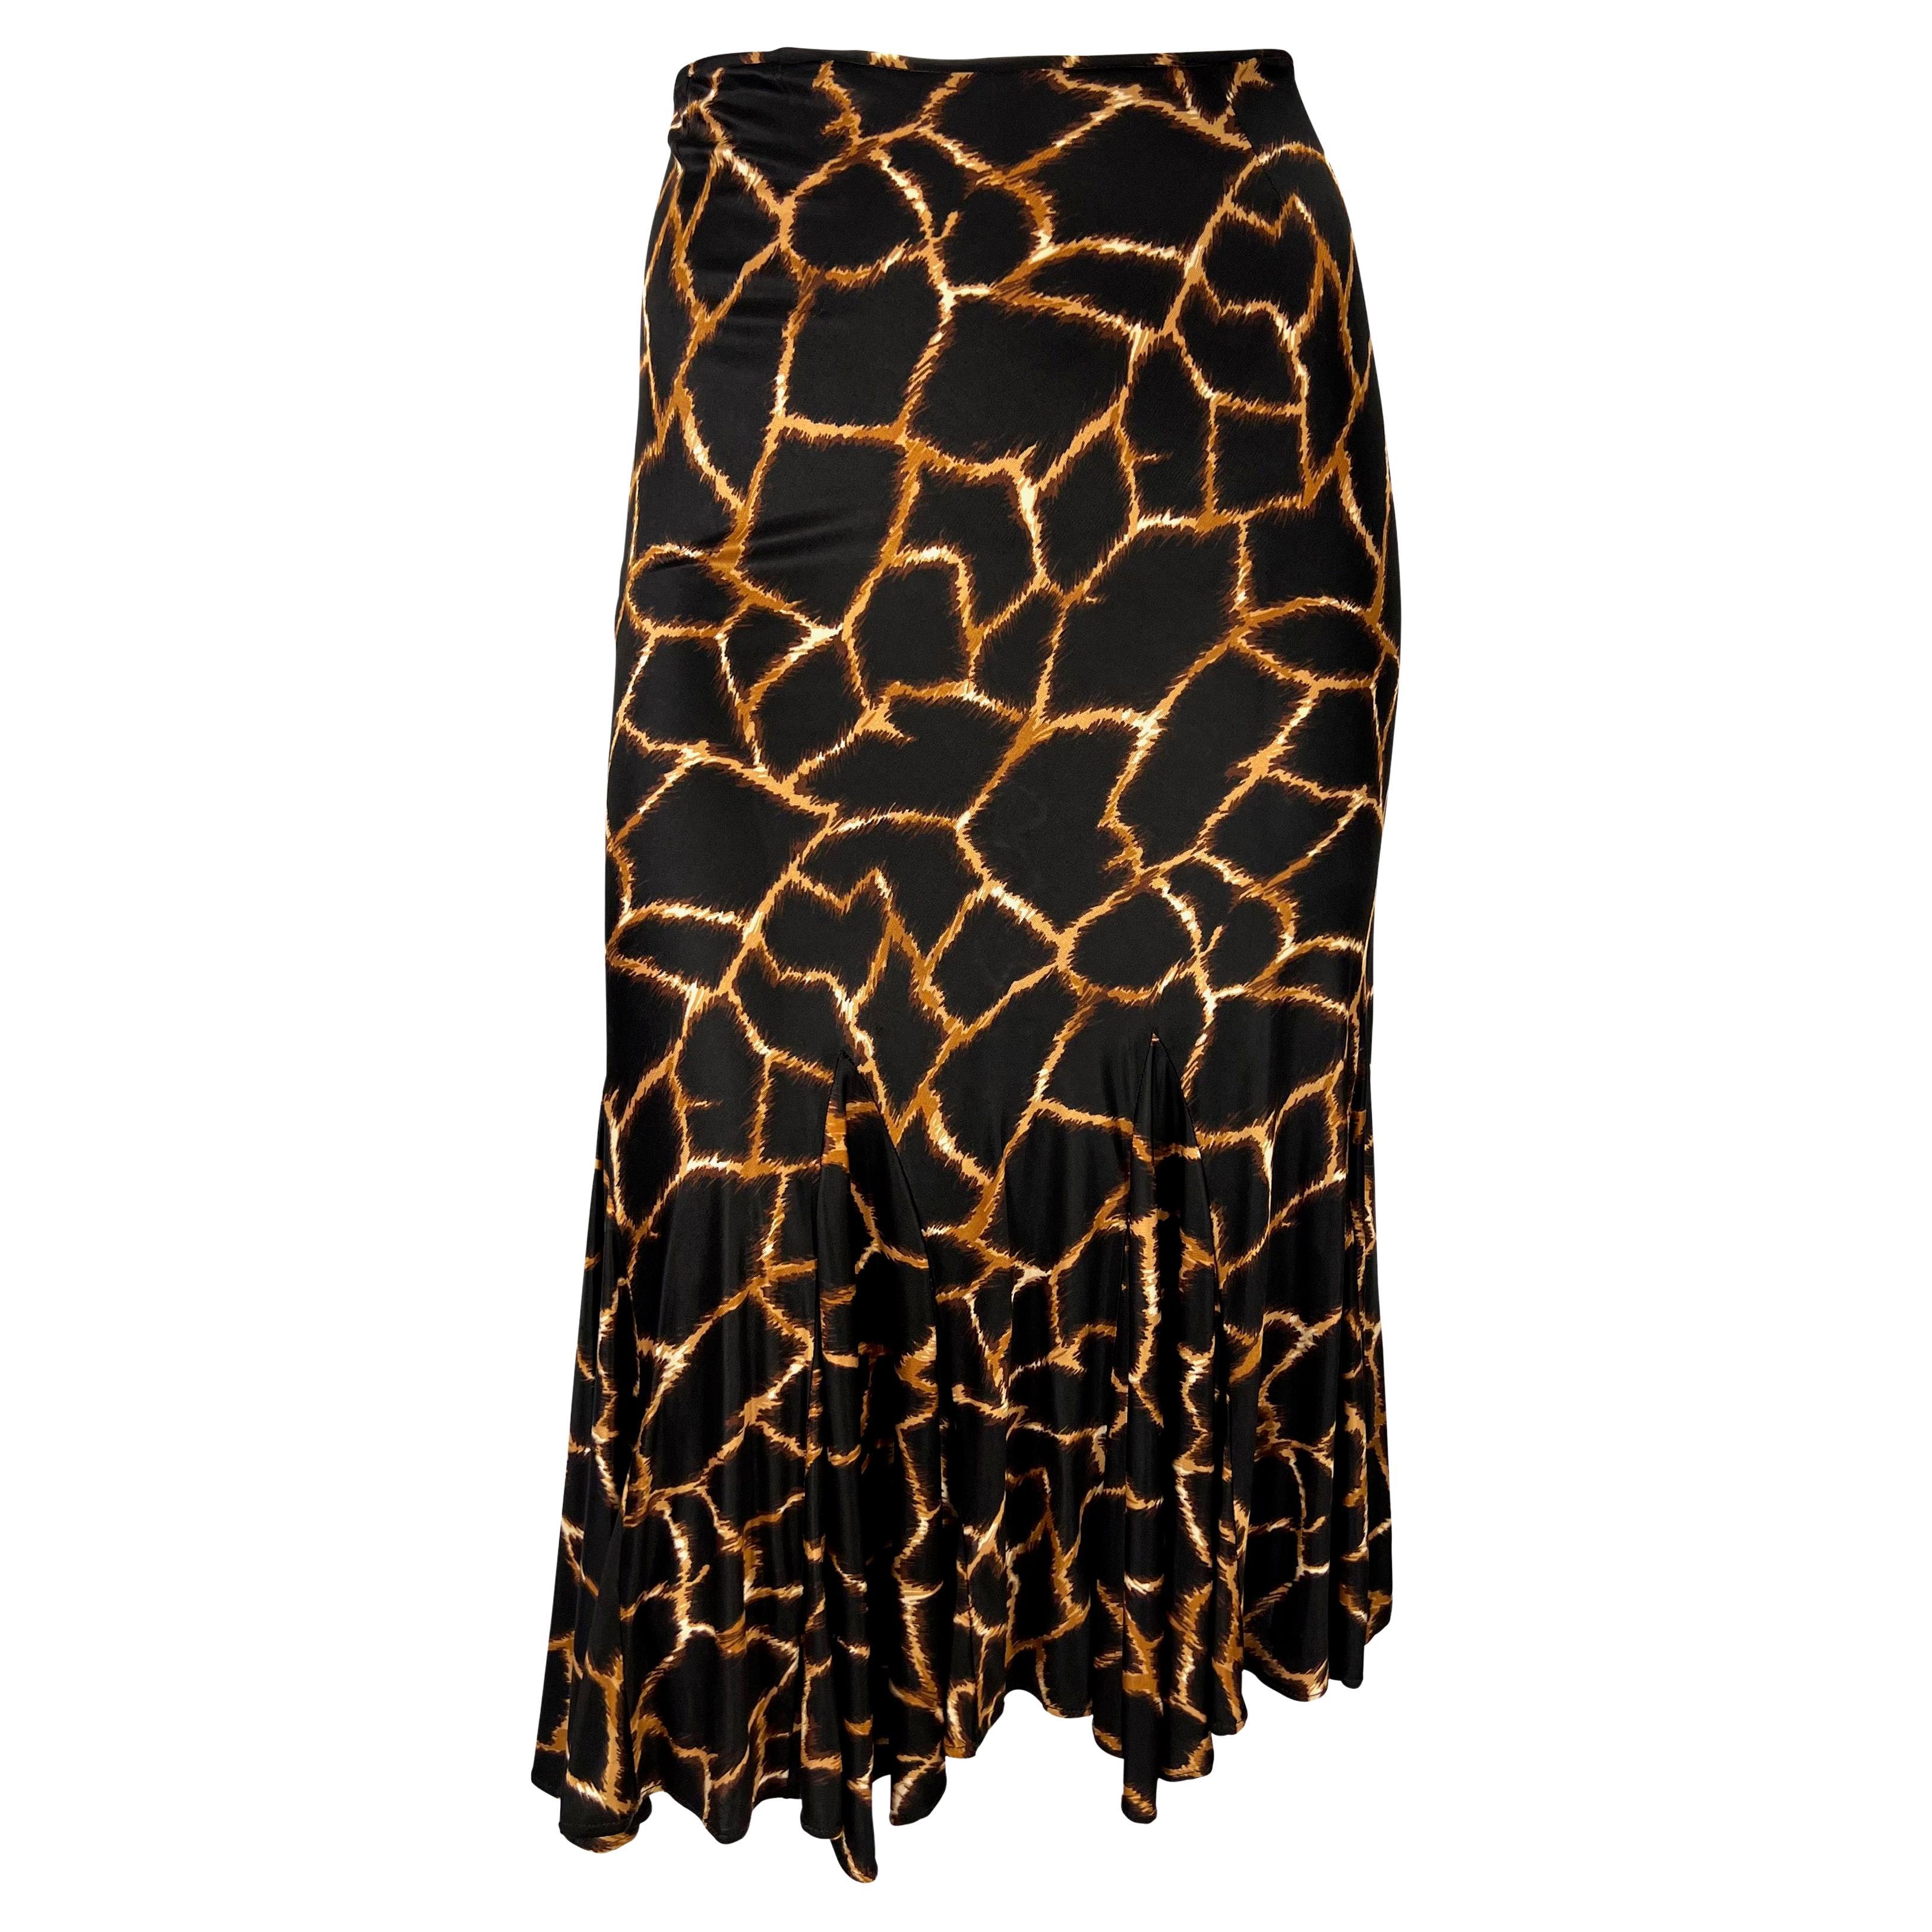 2000s Dolce & Gabbana Giraffe Print Brown Viscose Flare Skirt